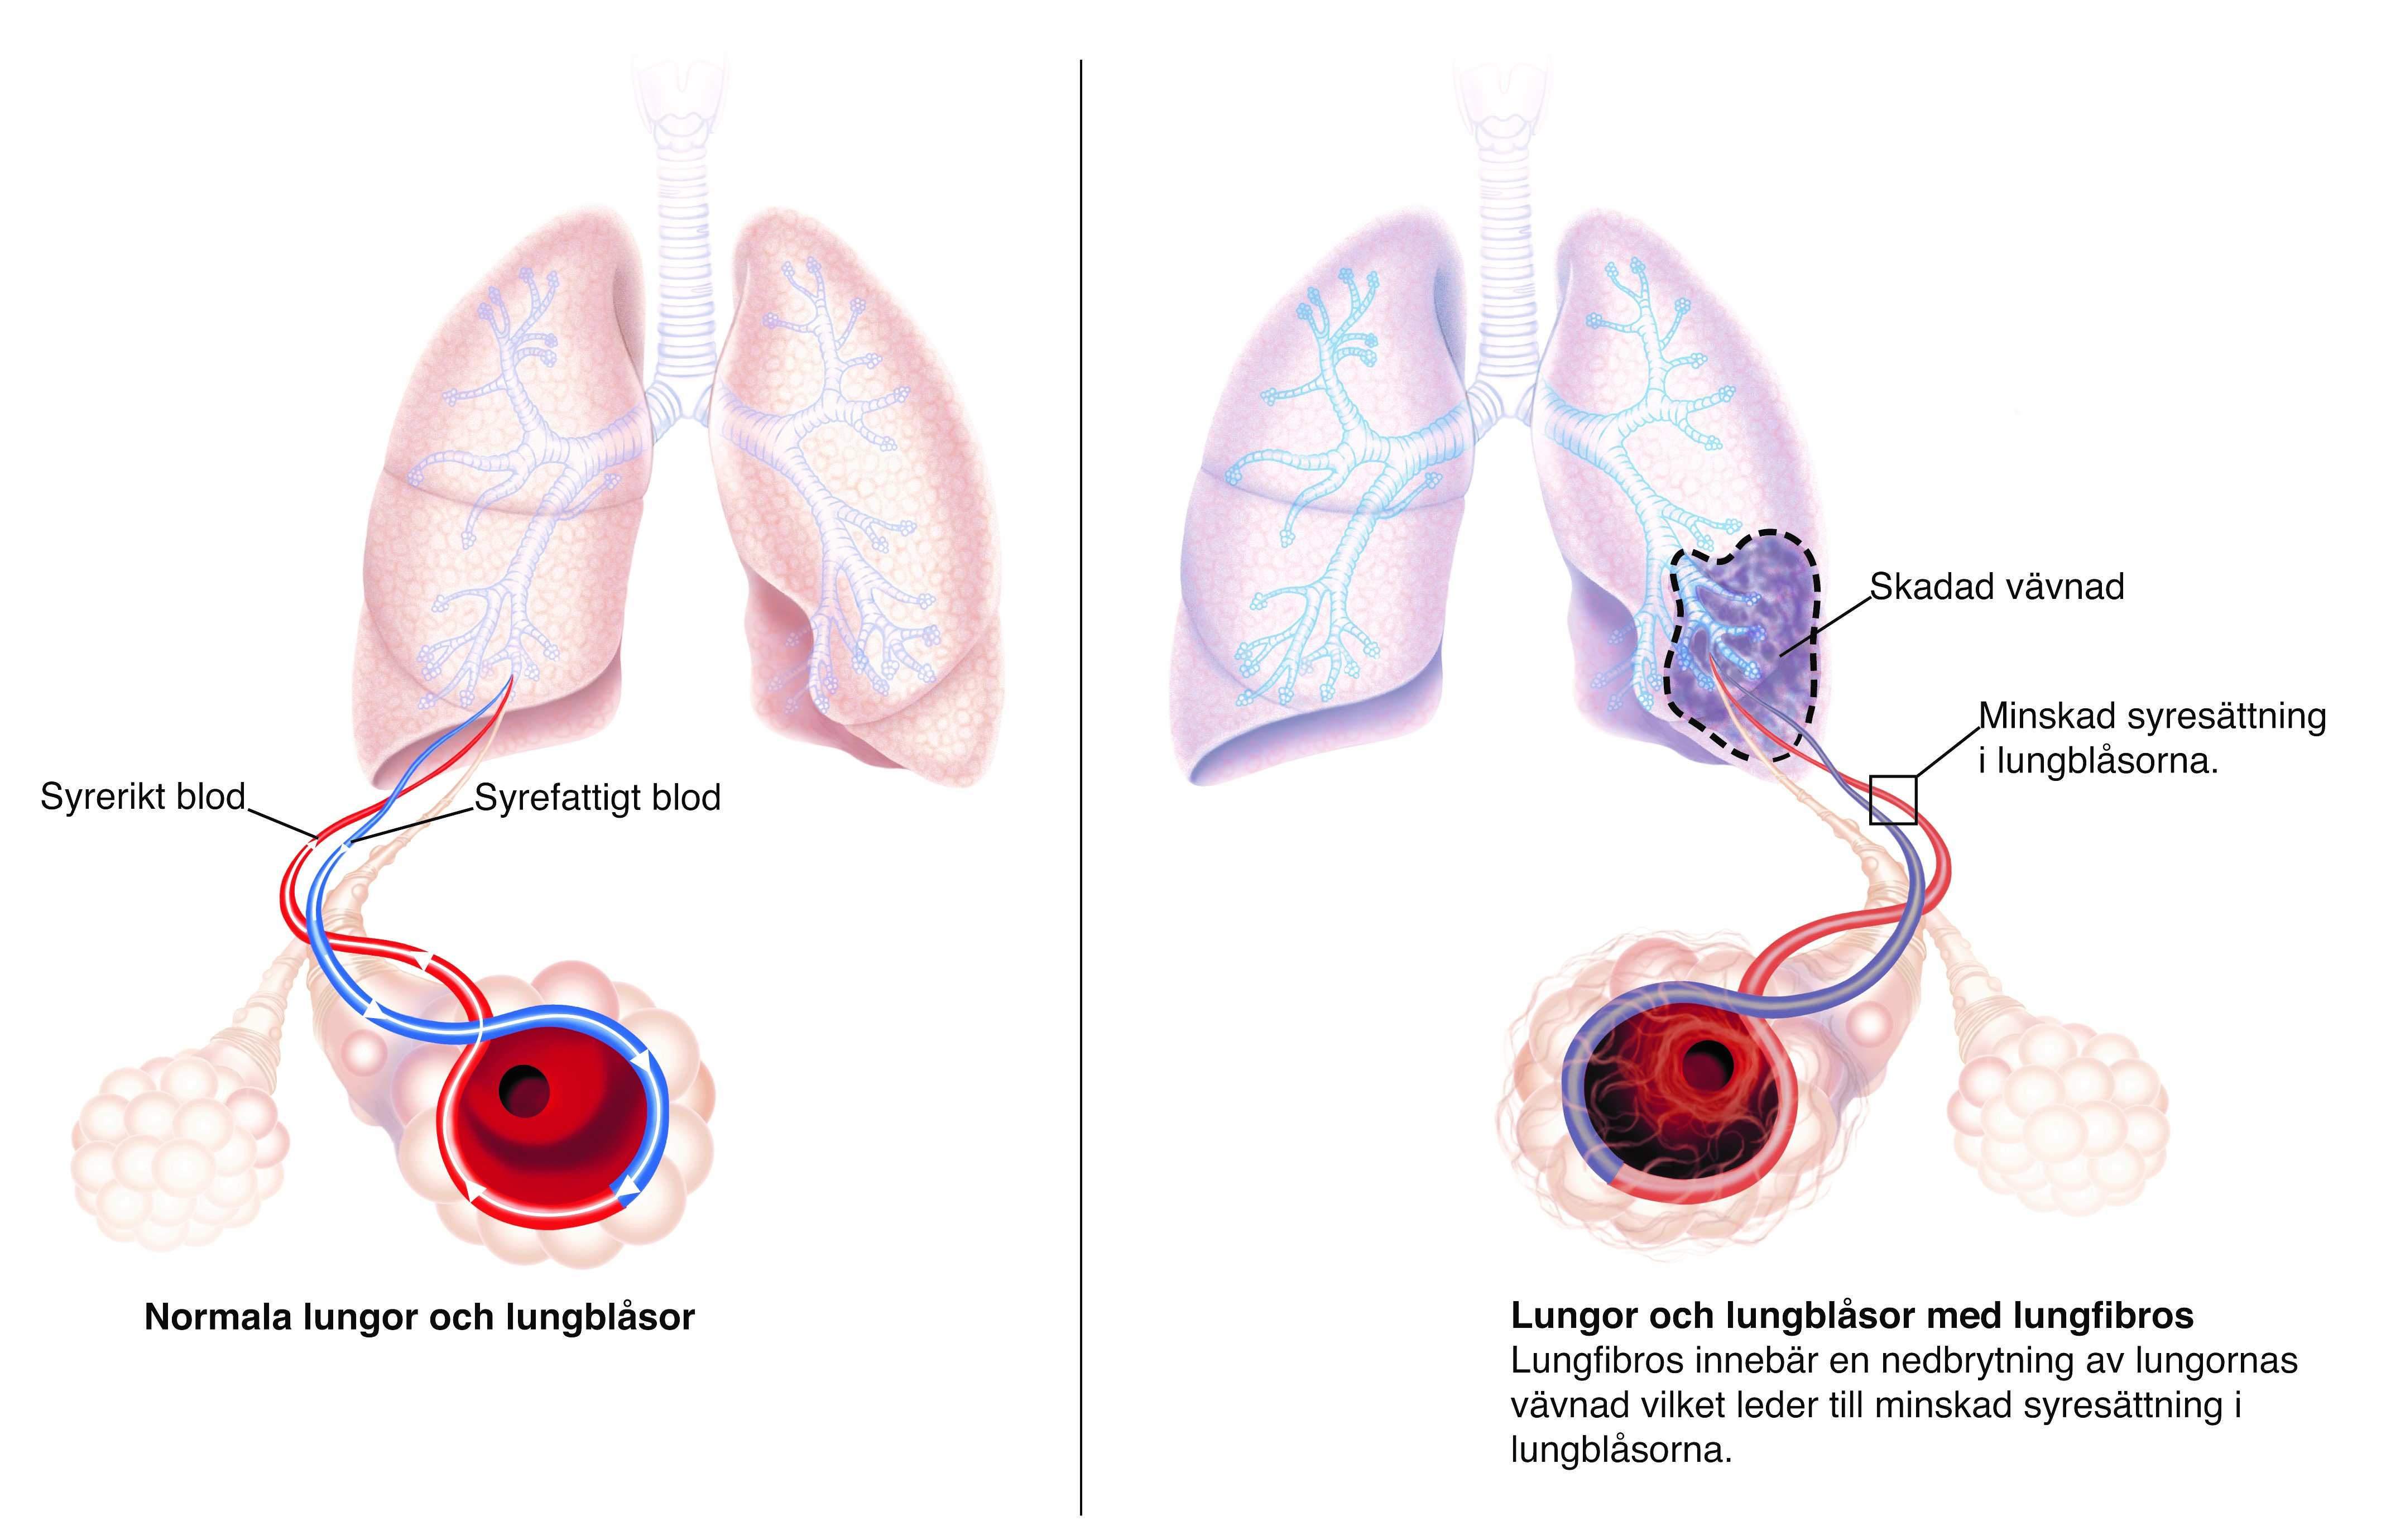 Lungor och lungblåsor drabbade av lungfibros.